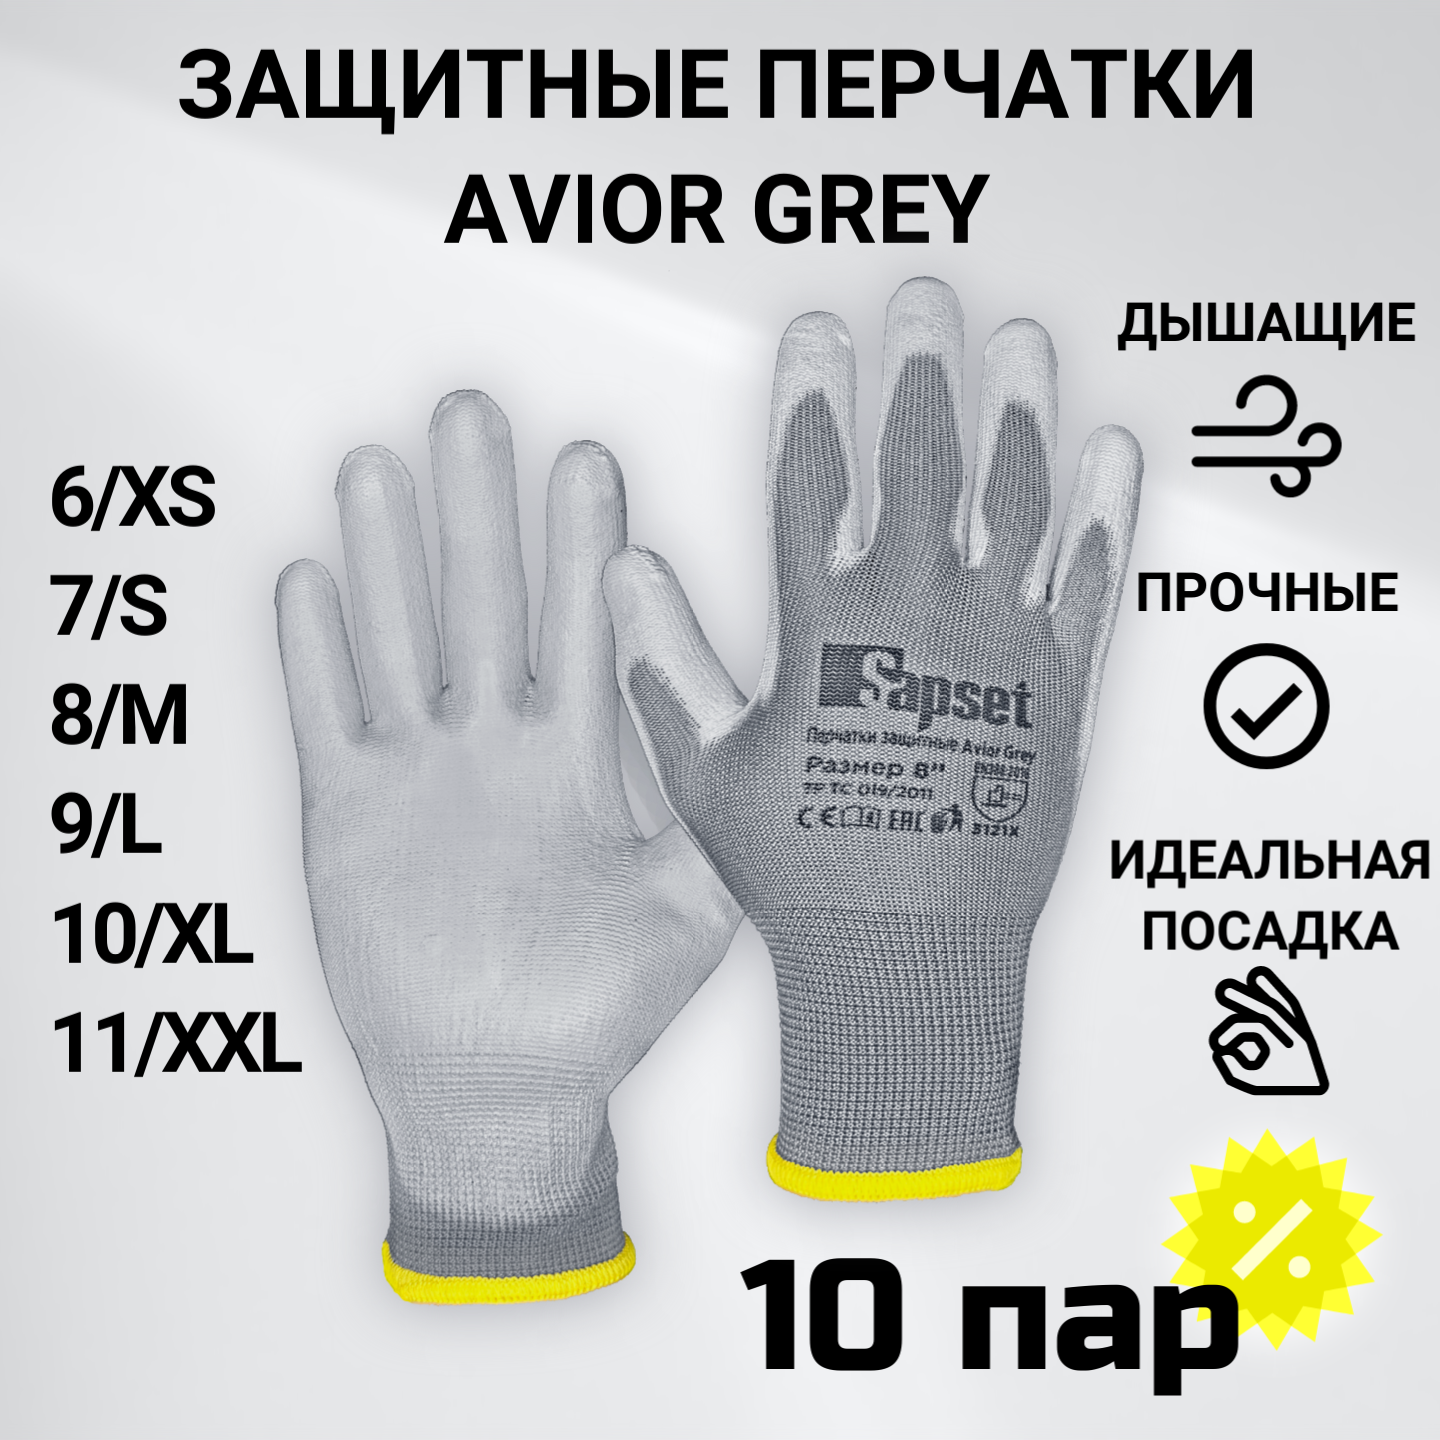 Перчатки рабочие с покрытием из полиуретана Sapset Avior Grey размер S/7 - 10 пар